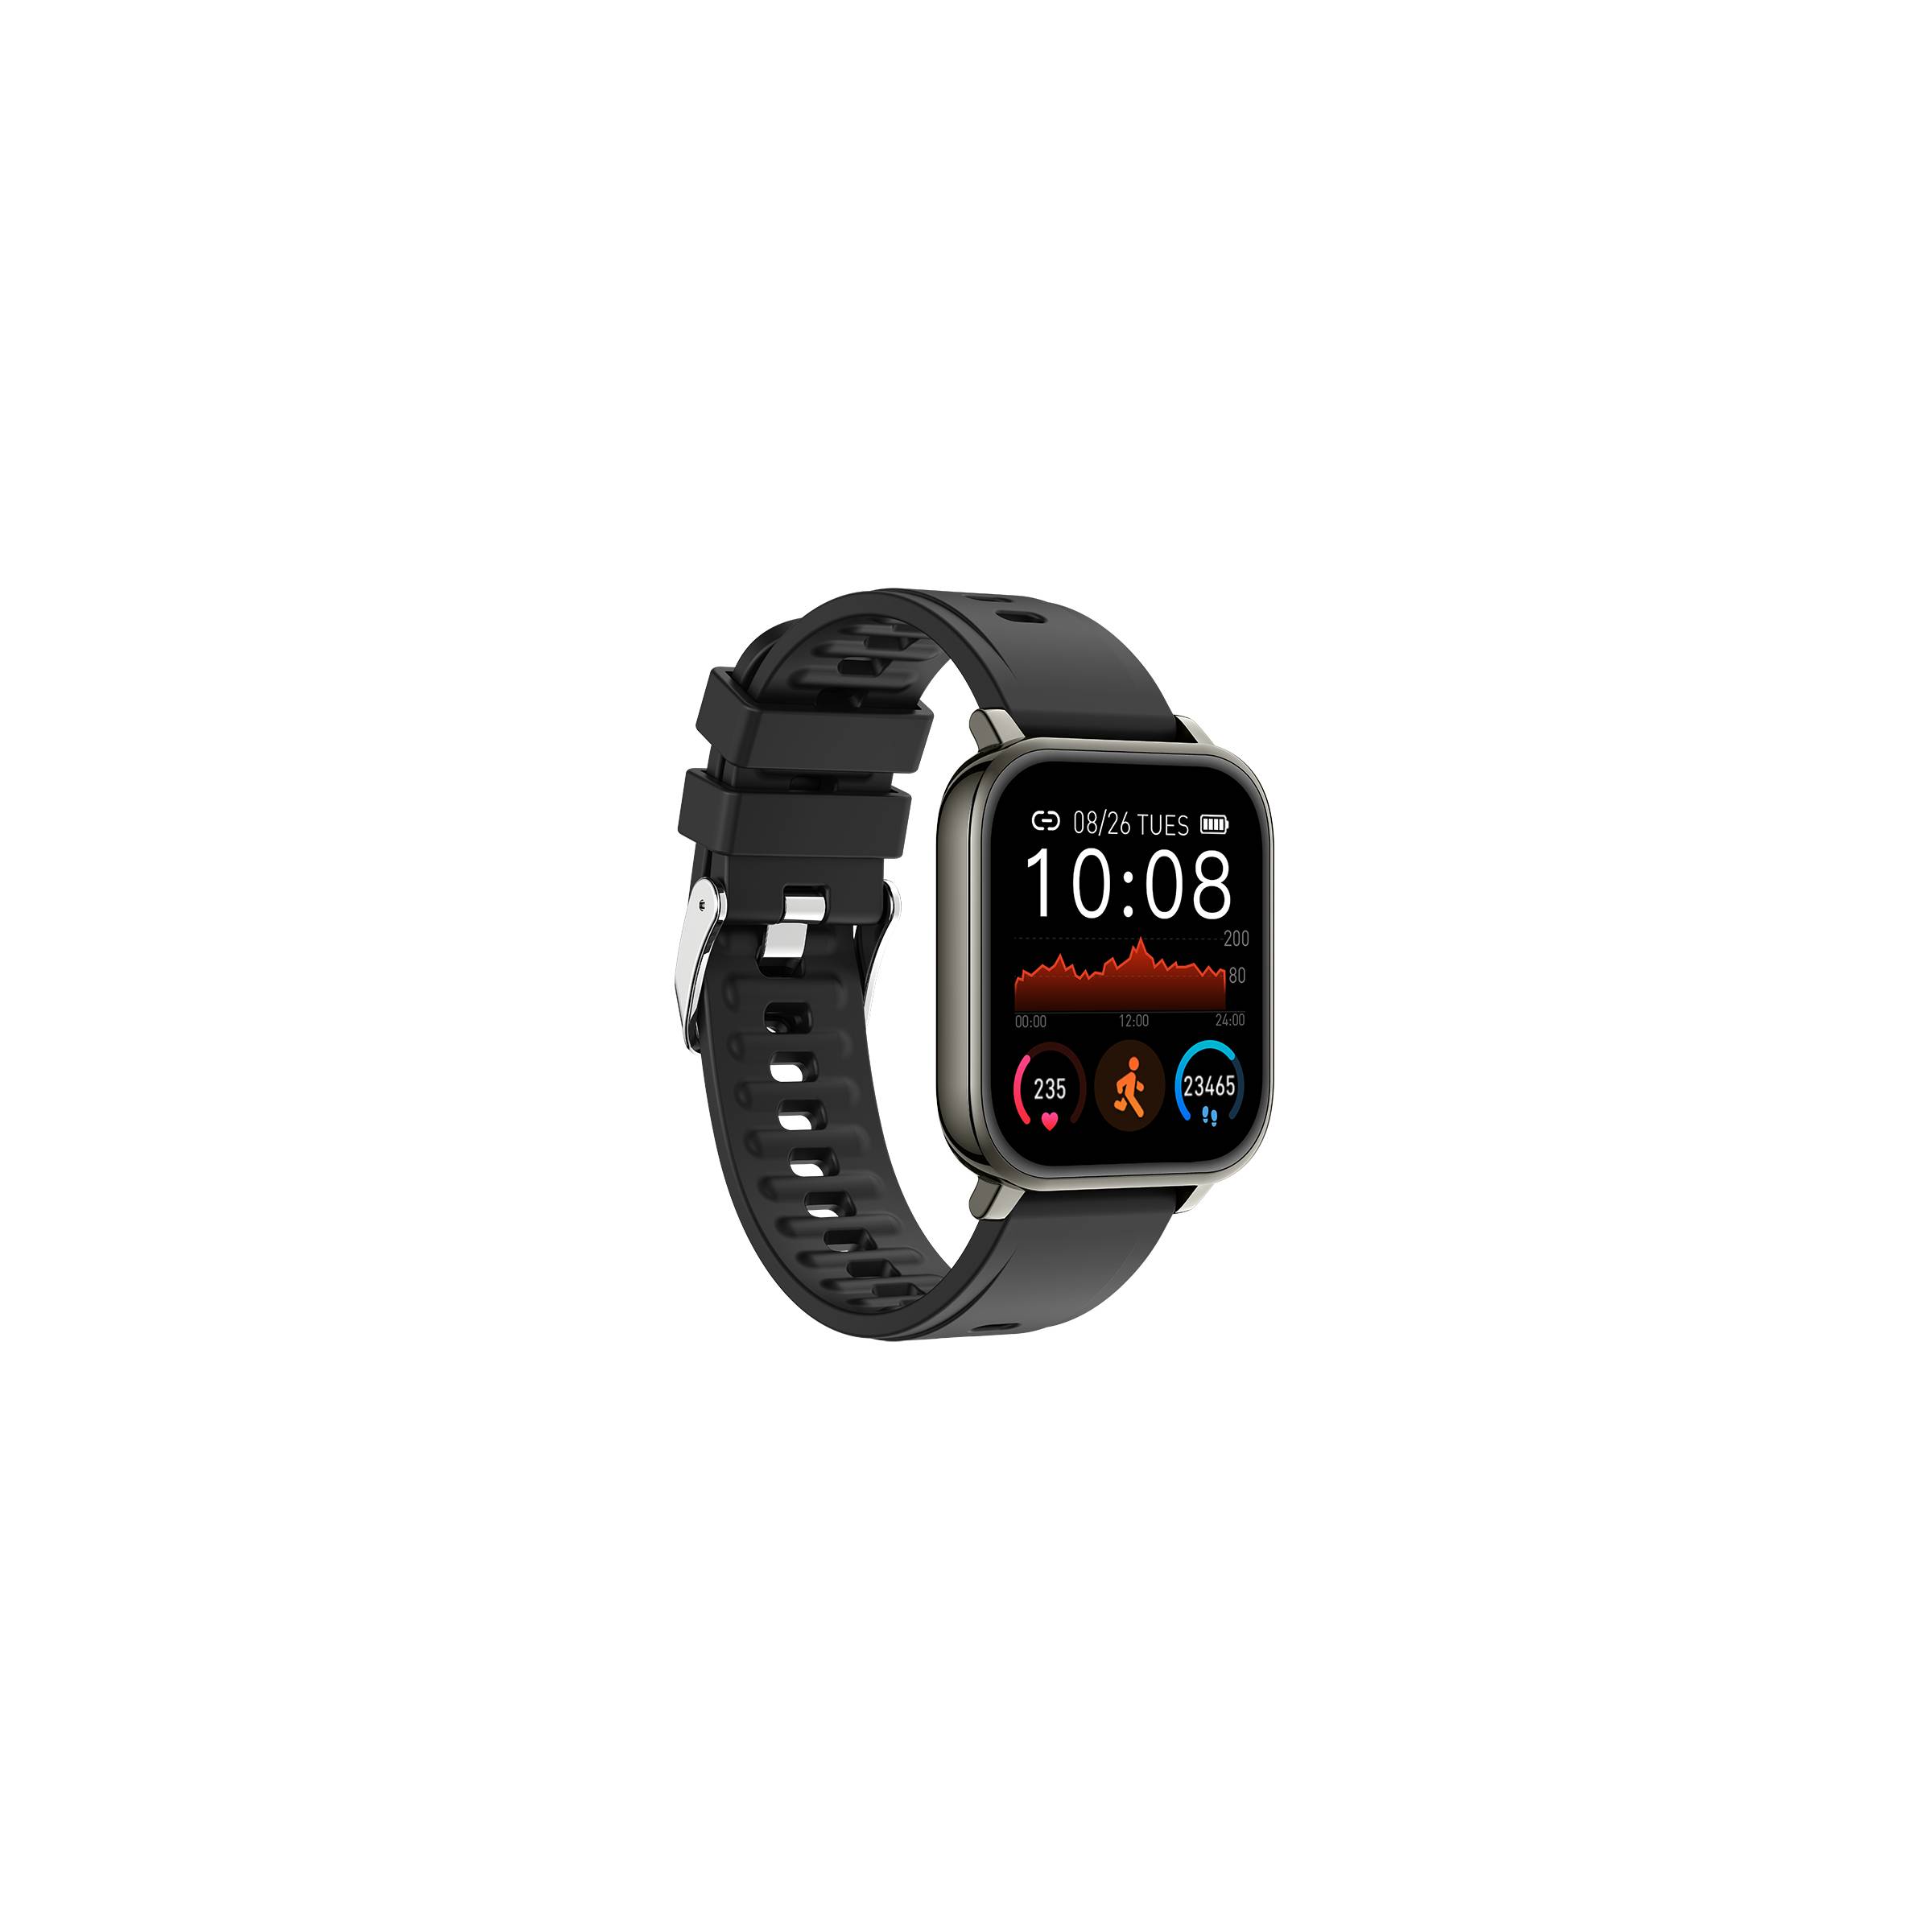 Bilde av Sinox Lifestyle Smartwatch For Ios Og Android - Sort